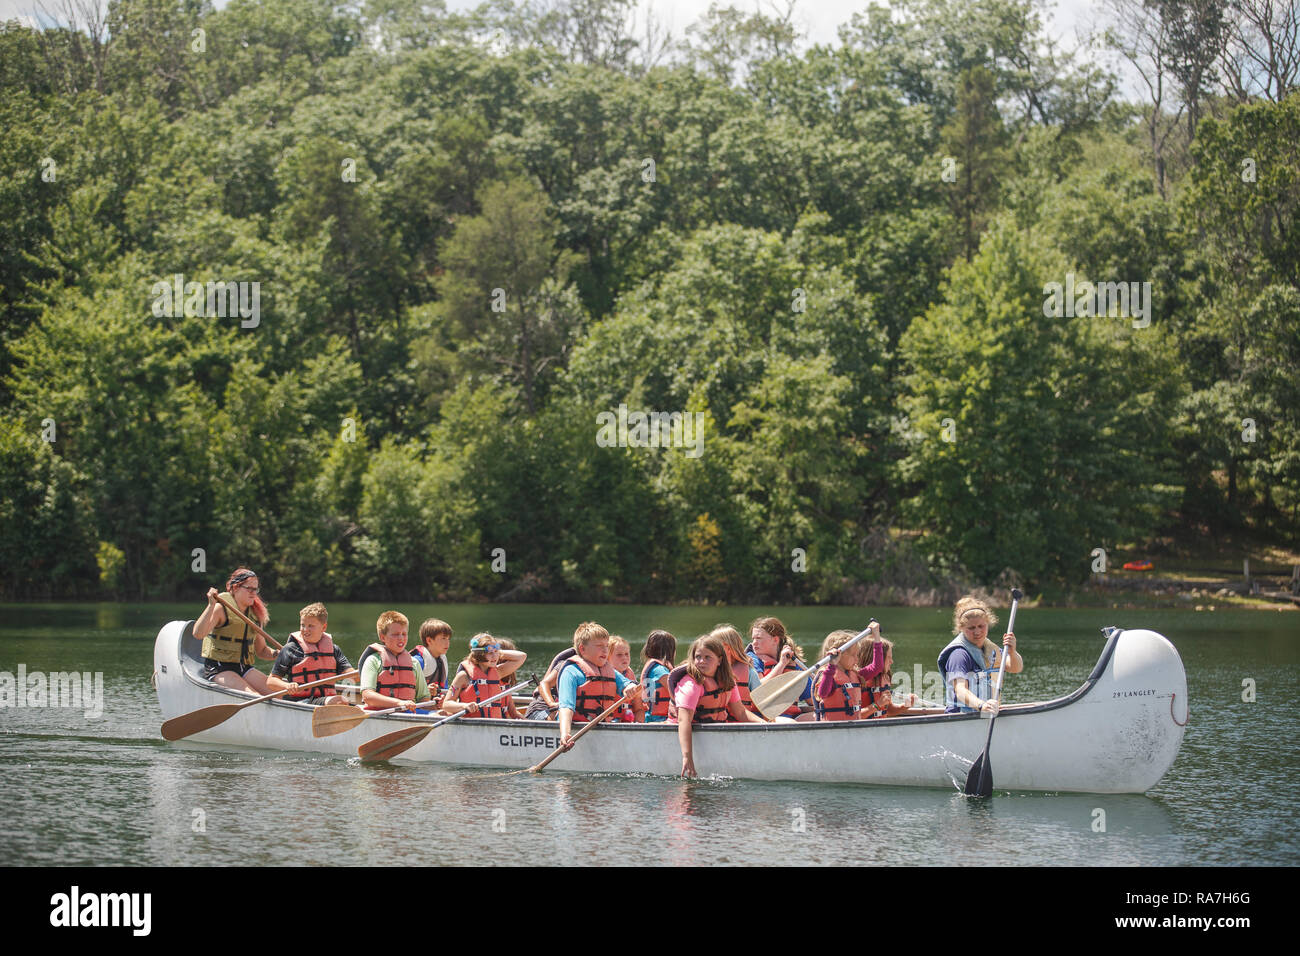 Viele kleine Kinder, die Rettungsanker tragen, füllen ein großes Kanu, das während ihres Sommerlagers in einem See paddelt. Stockfoto